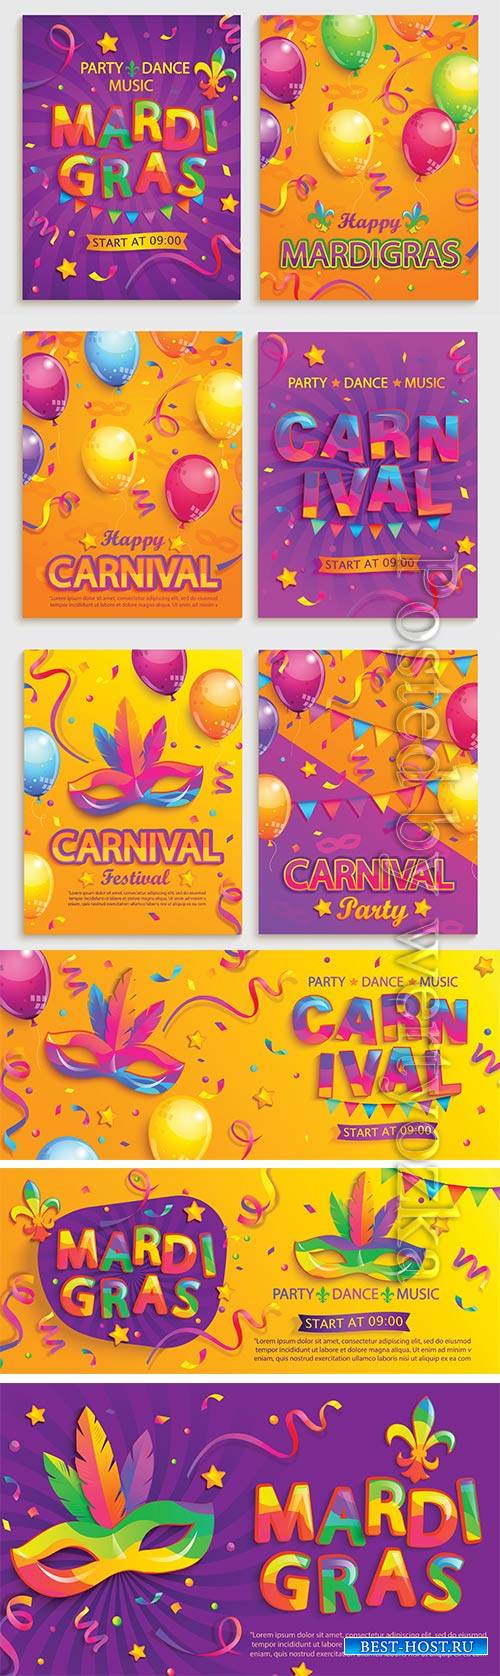 Mardi gras carnival poster, Venice carnival vector design # 3